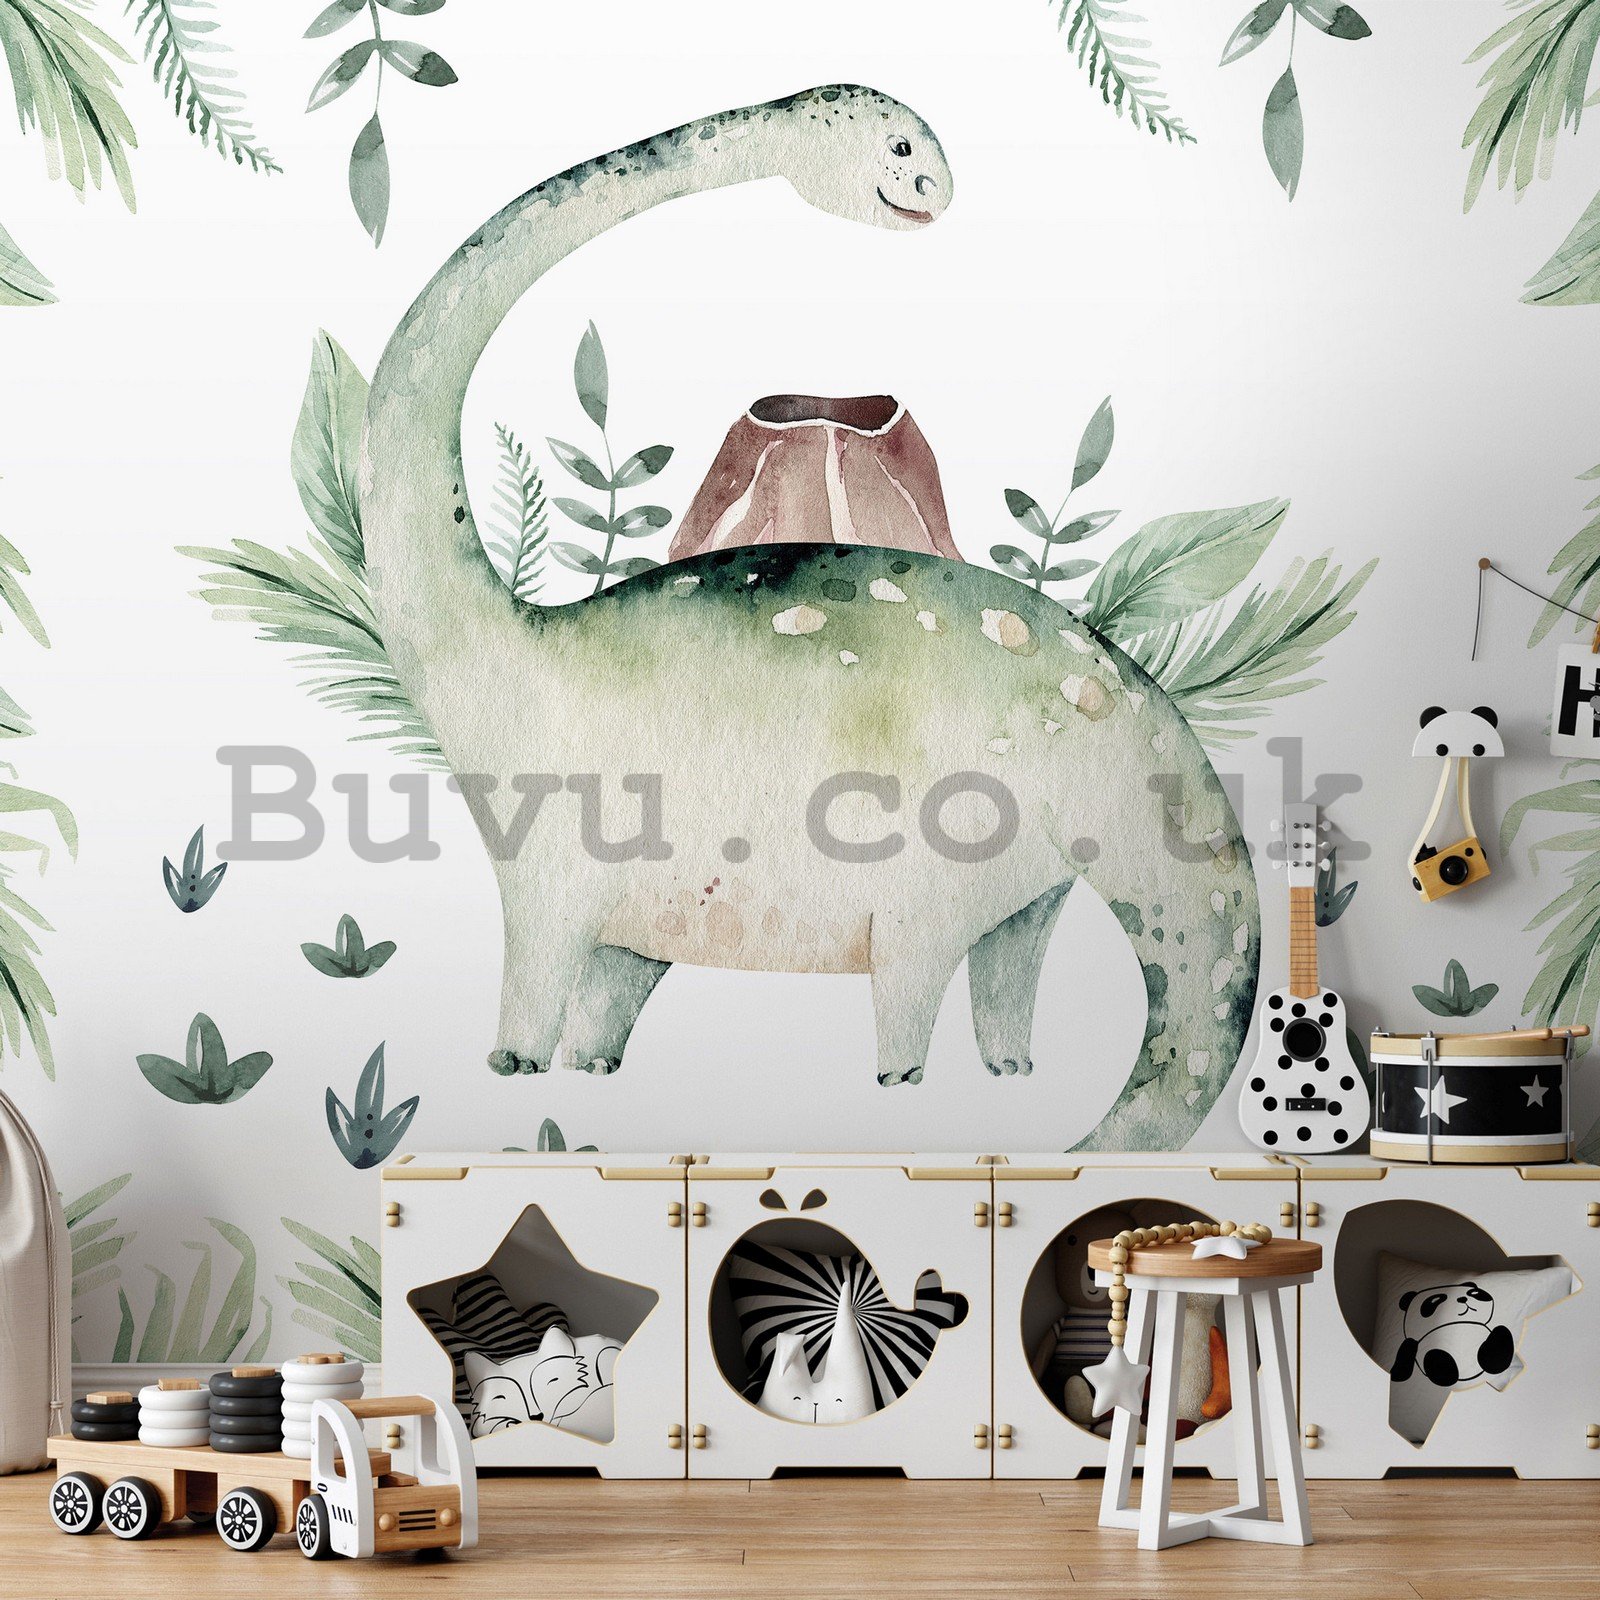 Wall mural vlies: Dinosaur in ferns - 254x184 cm